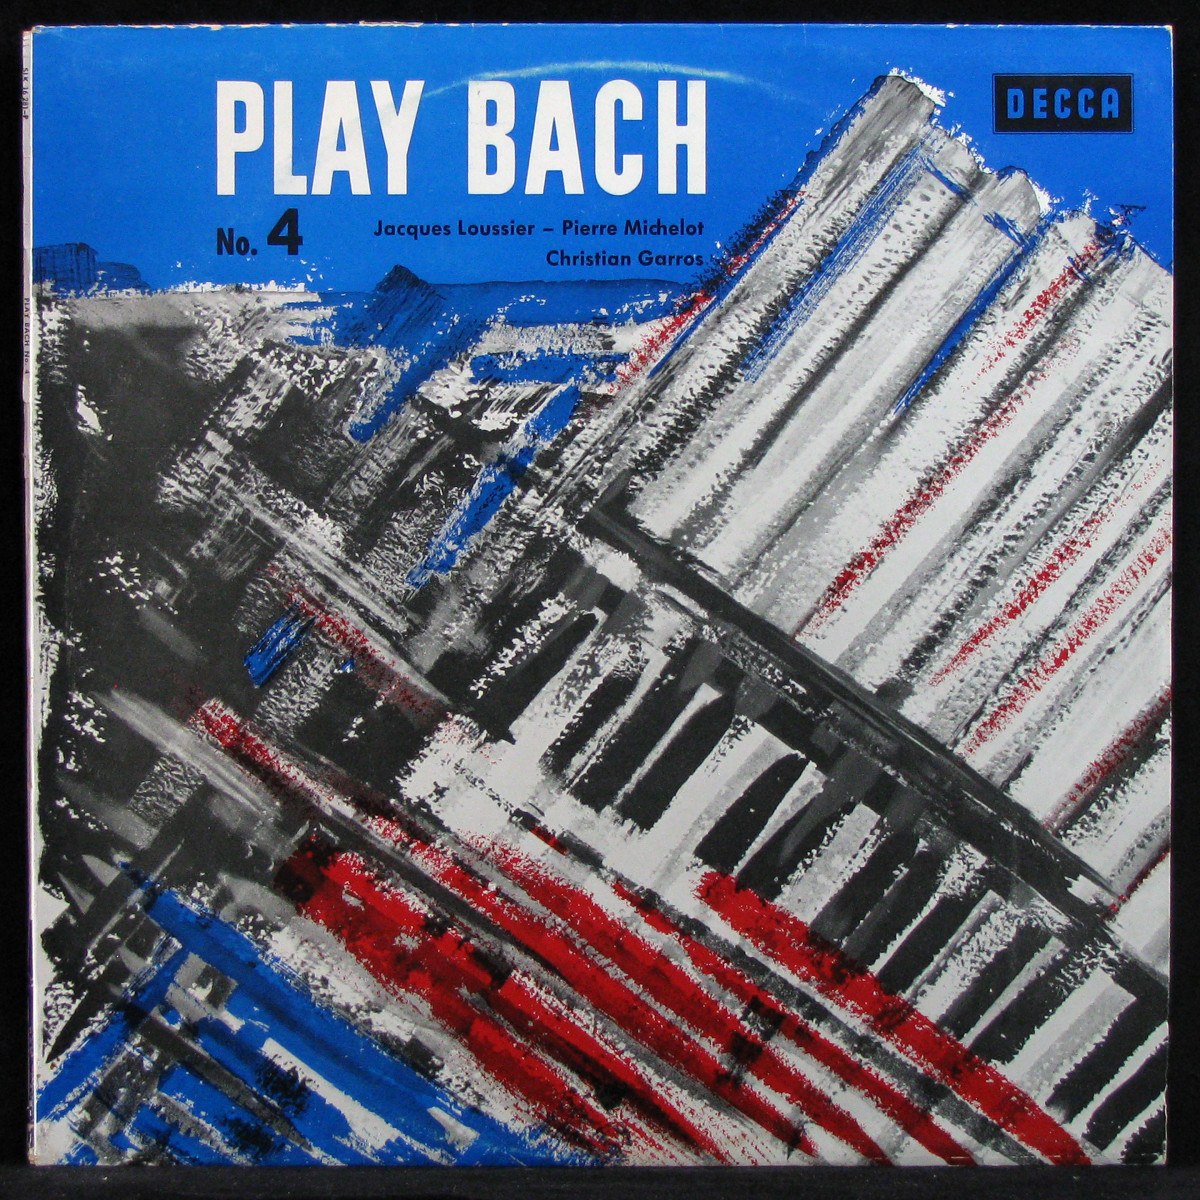 Play Bach No. 4